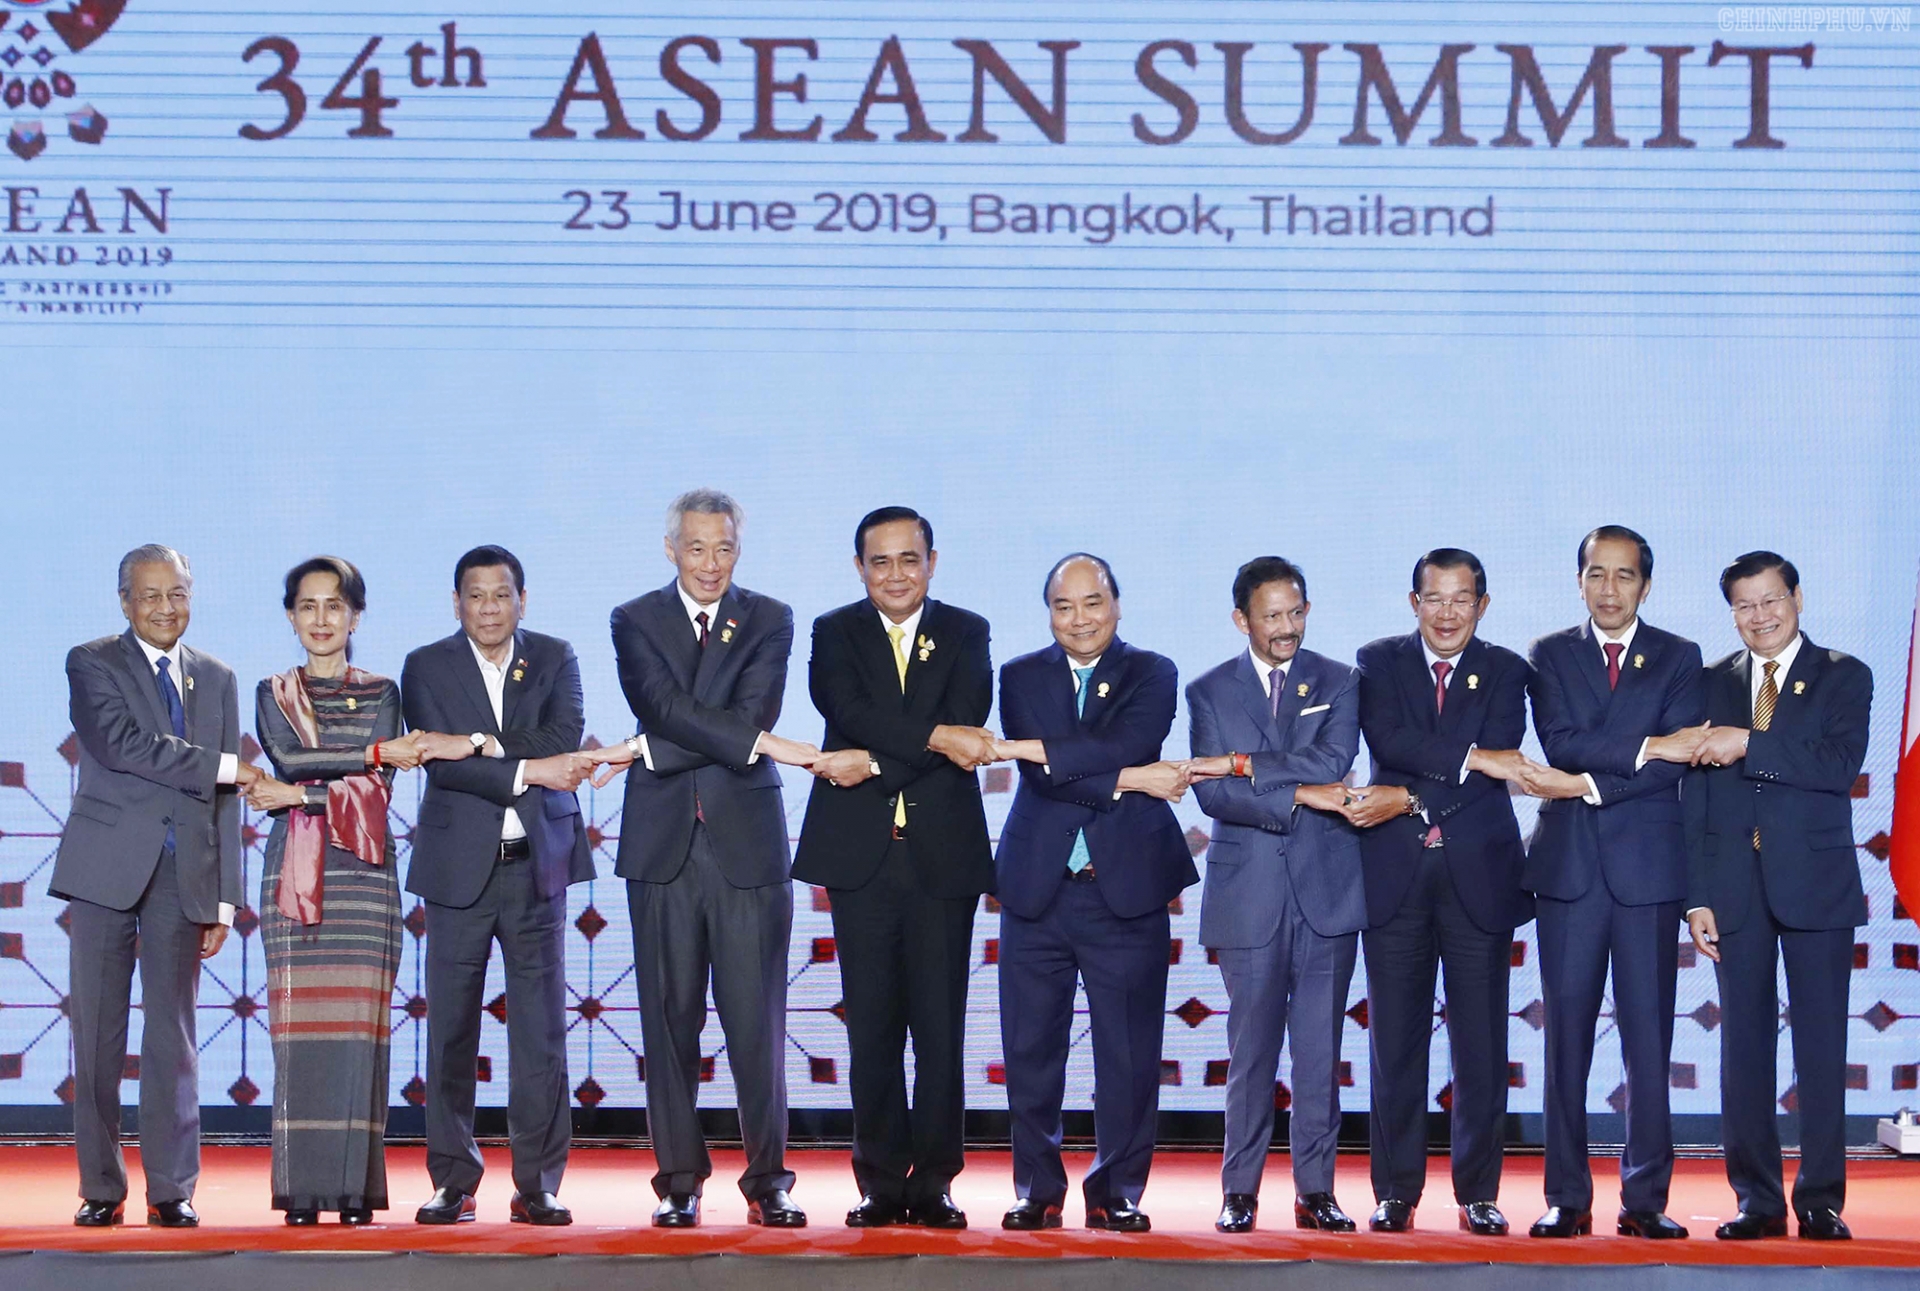 Thủ tướng dự khai mạc Hội nghị cấp cao ASEAN